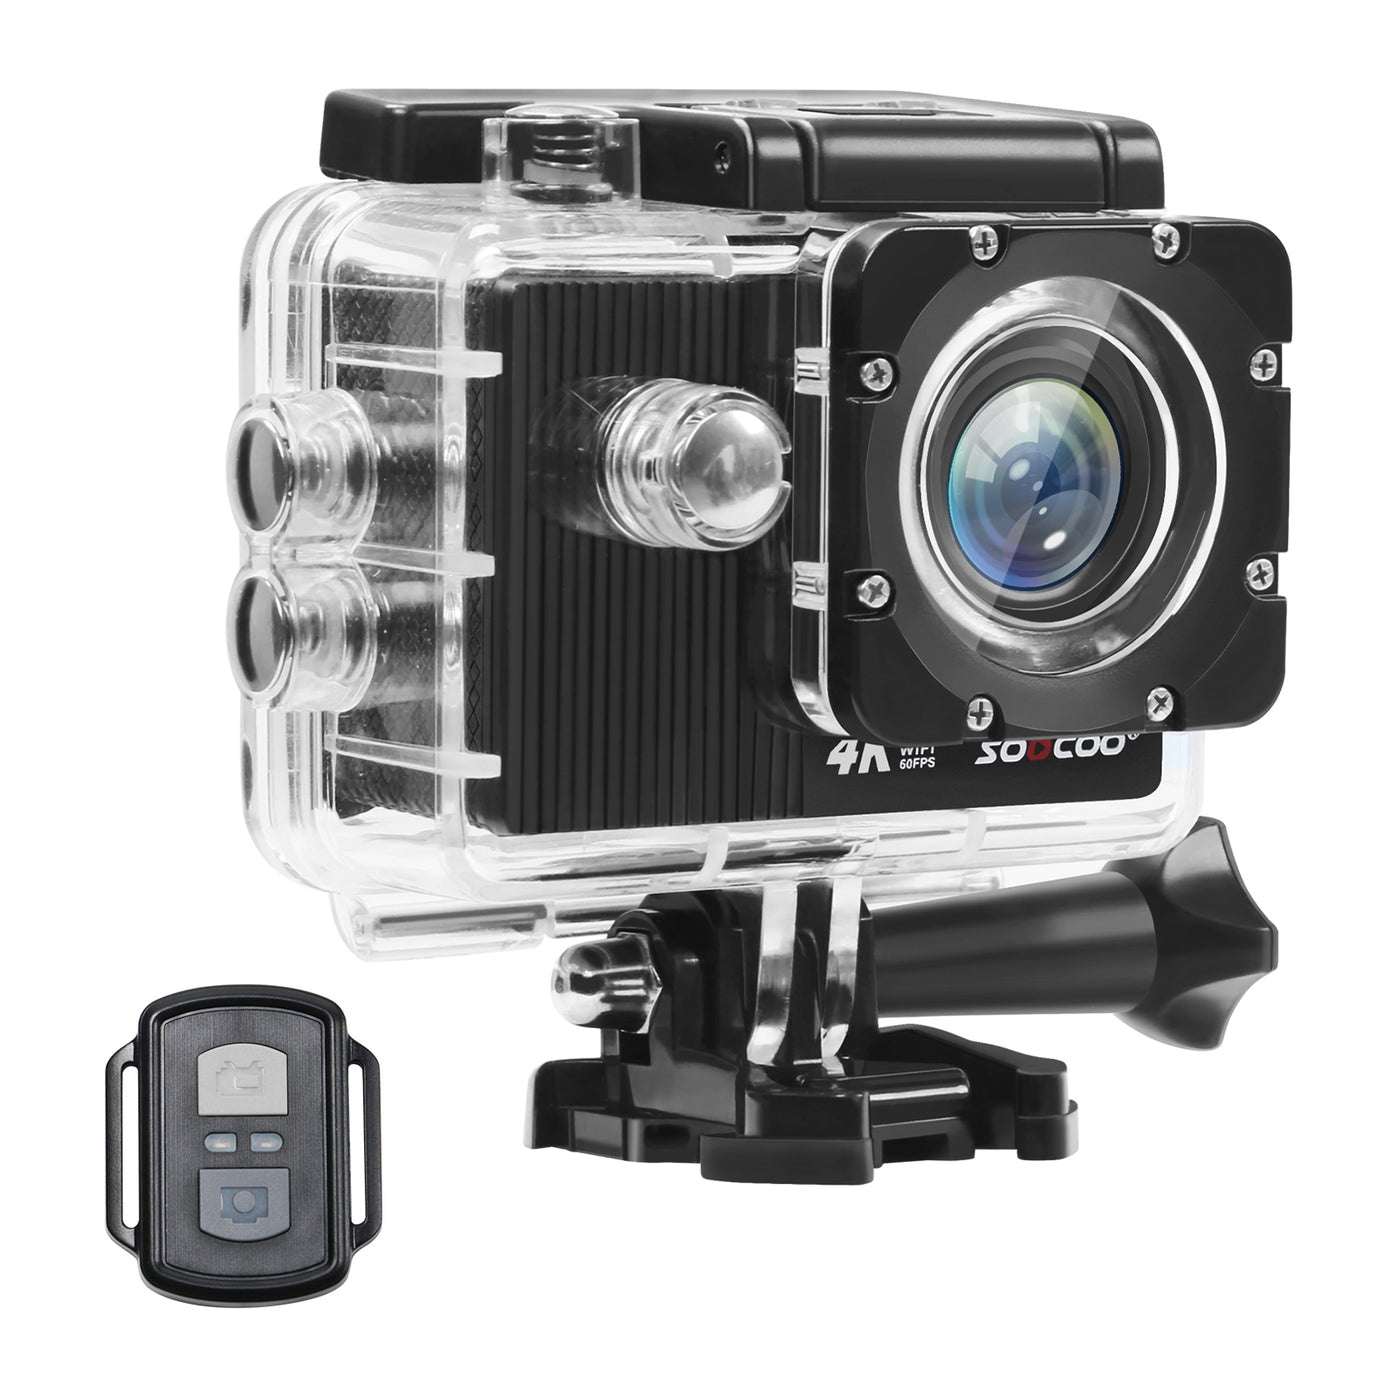 Sports Action Camera 4K 60FPS WIFI HD 1080P Waterproof Digital Camcorder